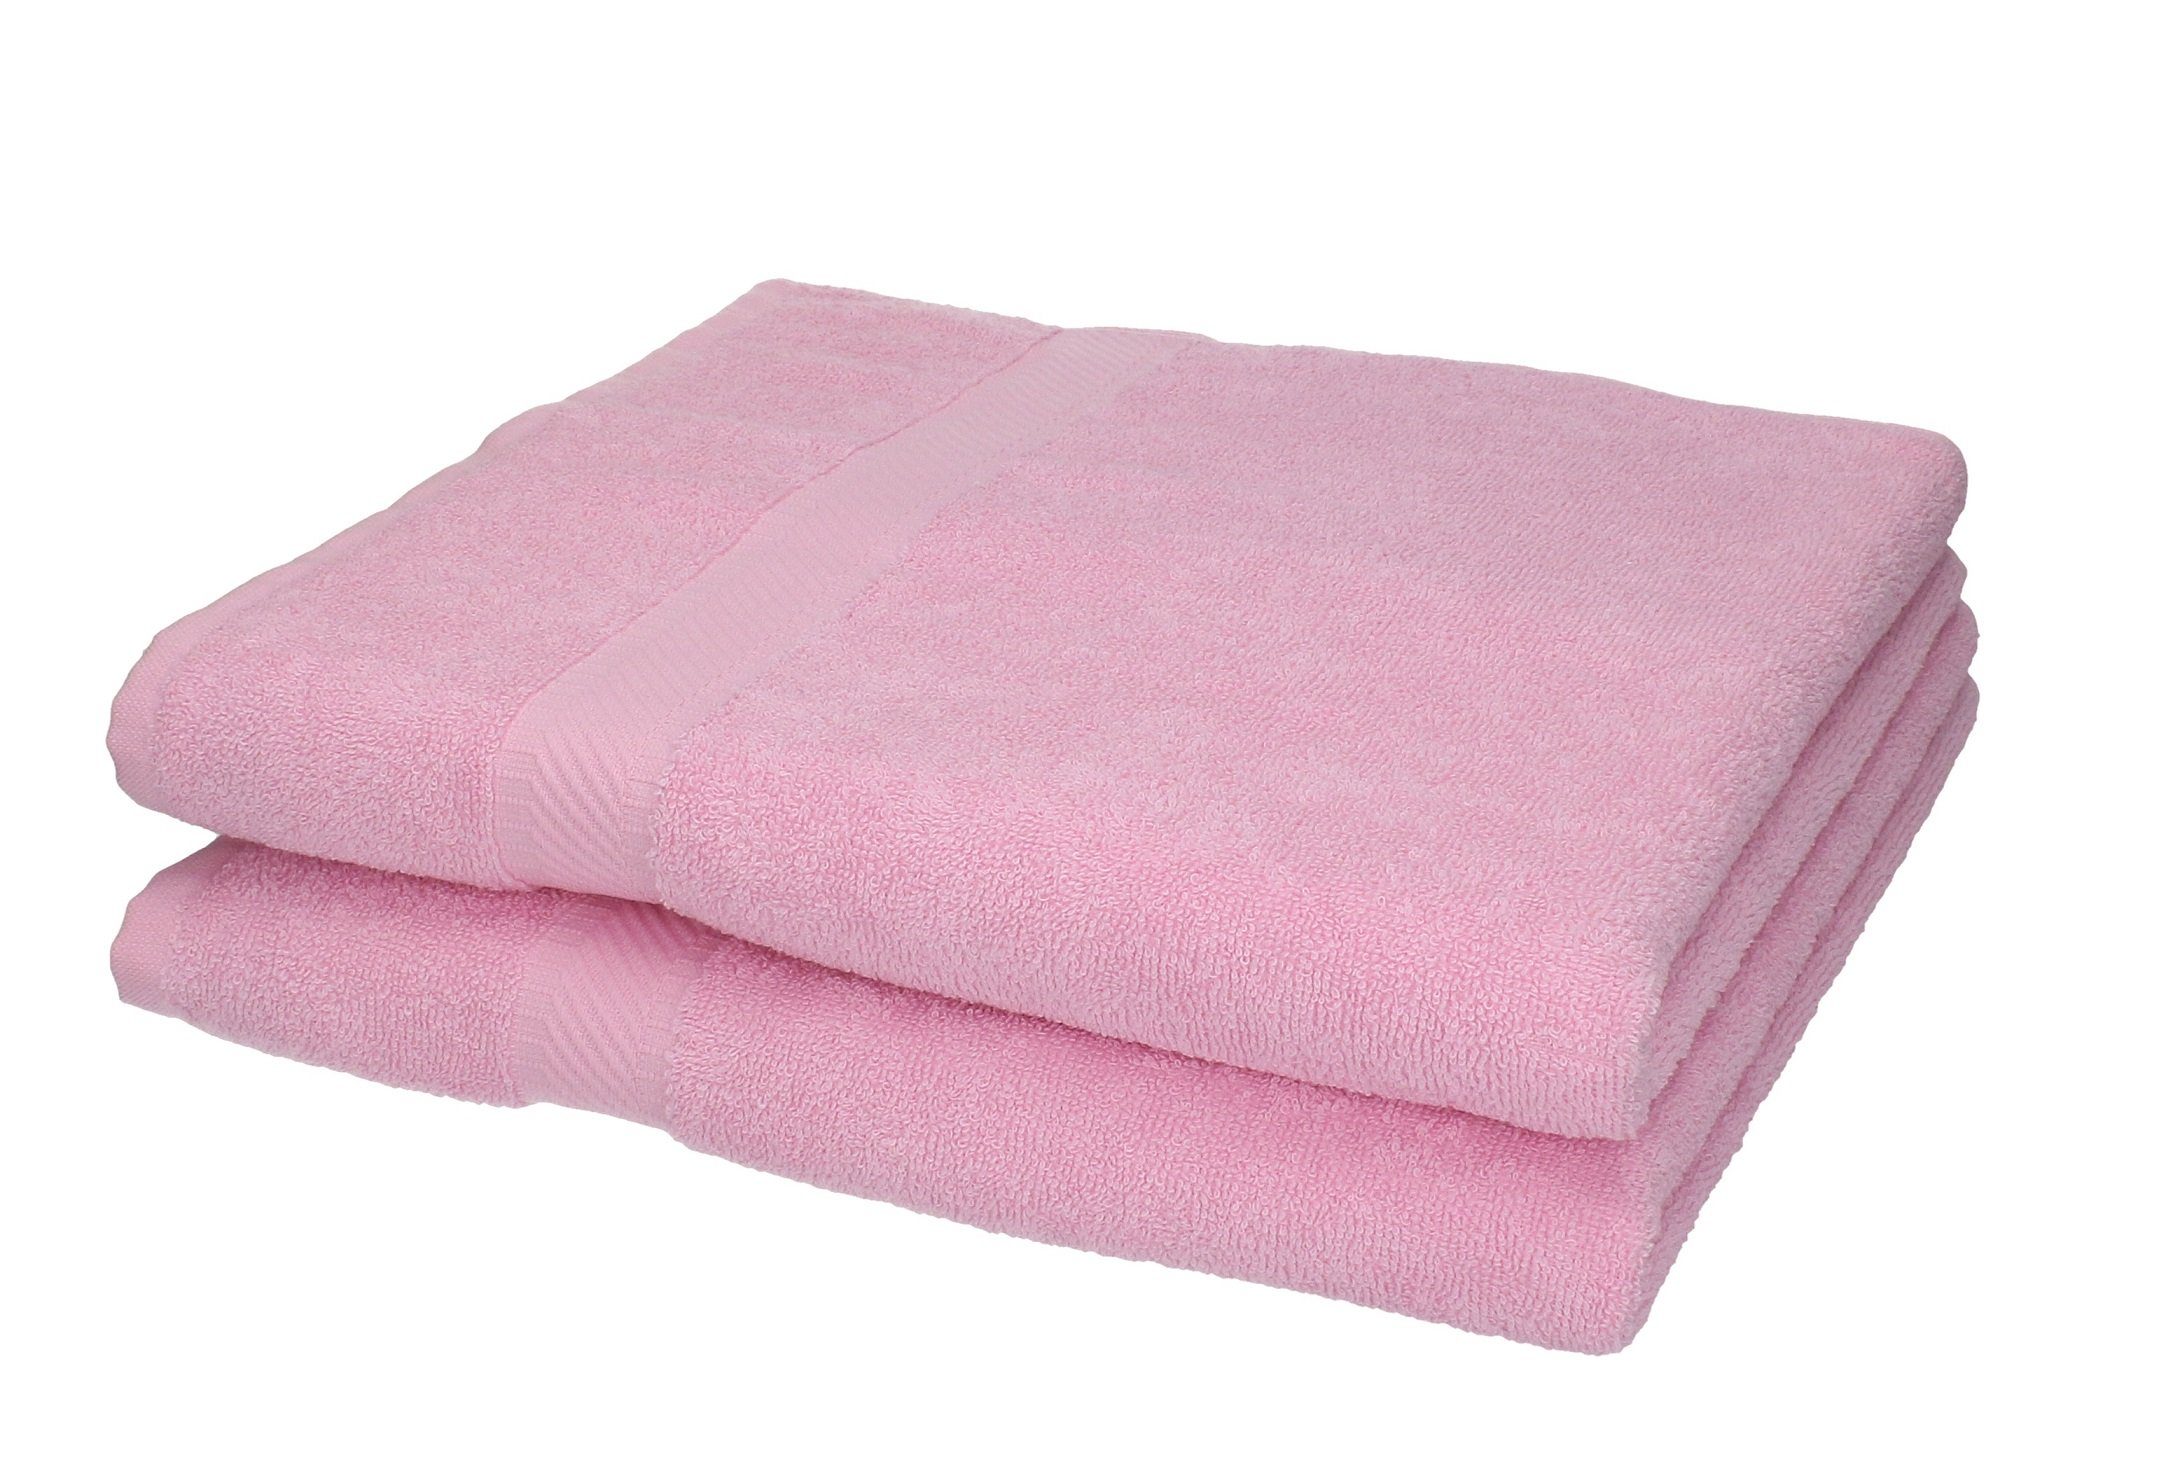 Betz Duschtücher 2 Stück Duschtücher Duschtuch-Set Palermo 70 x 140 cm Farbe rosé, 100% Baumwolle